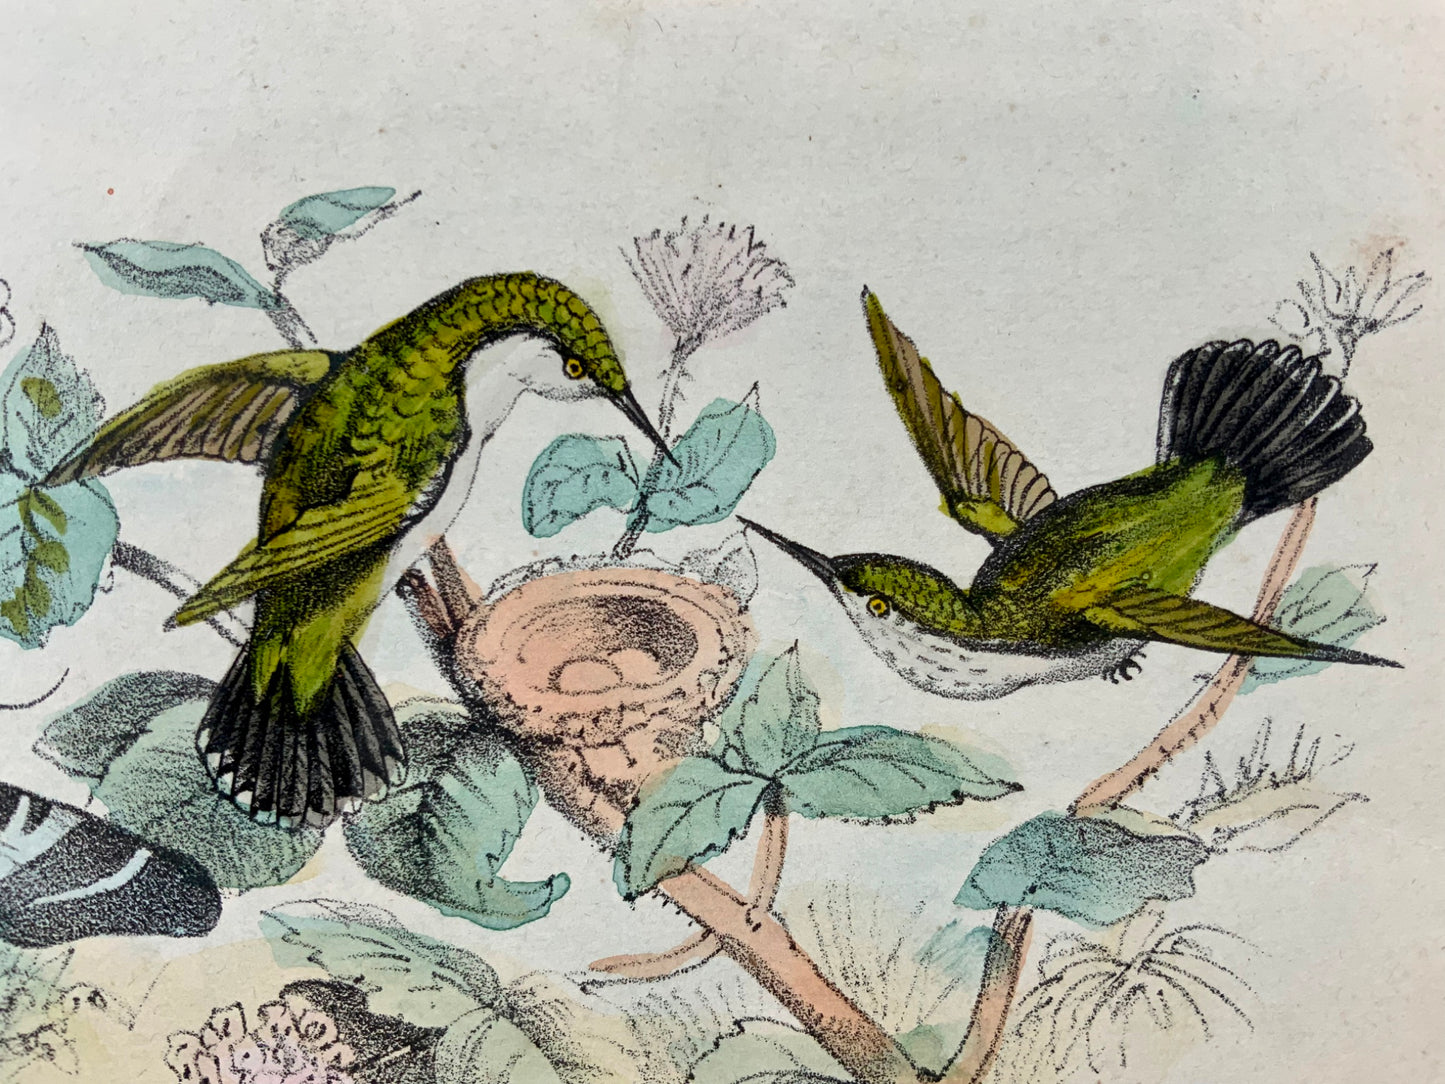 1864 Colibri, lithographie sur pierre colorée à la main, ornithologie